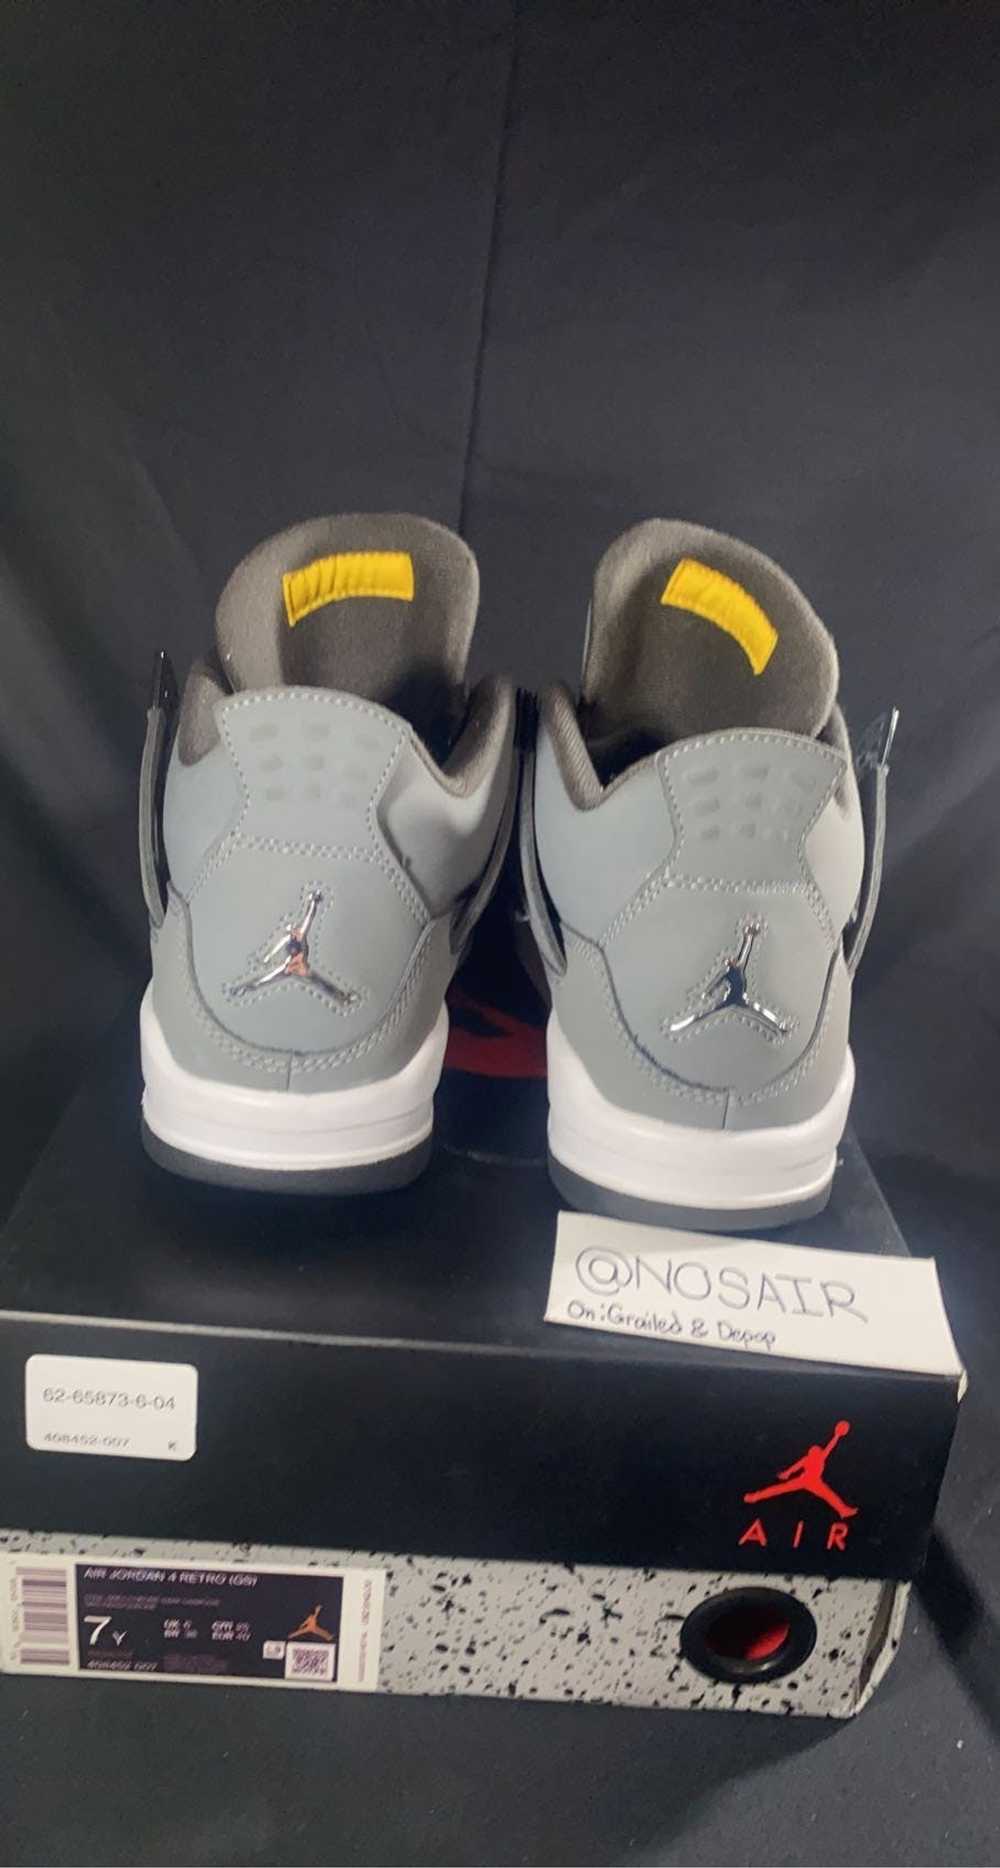 Jordan Brand × Nike 2019 Jordan 4 Cool Grey - image 3